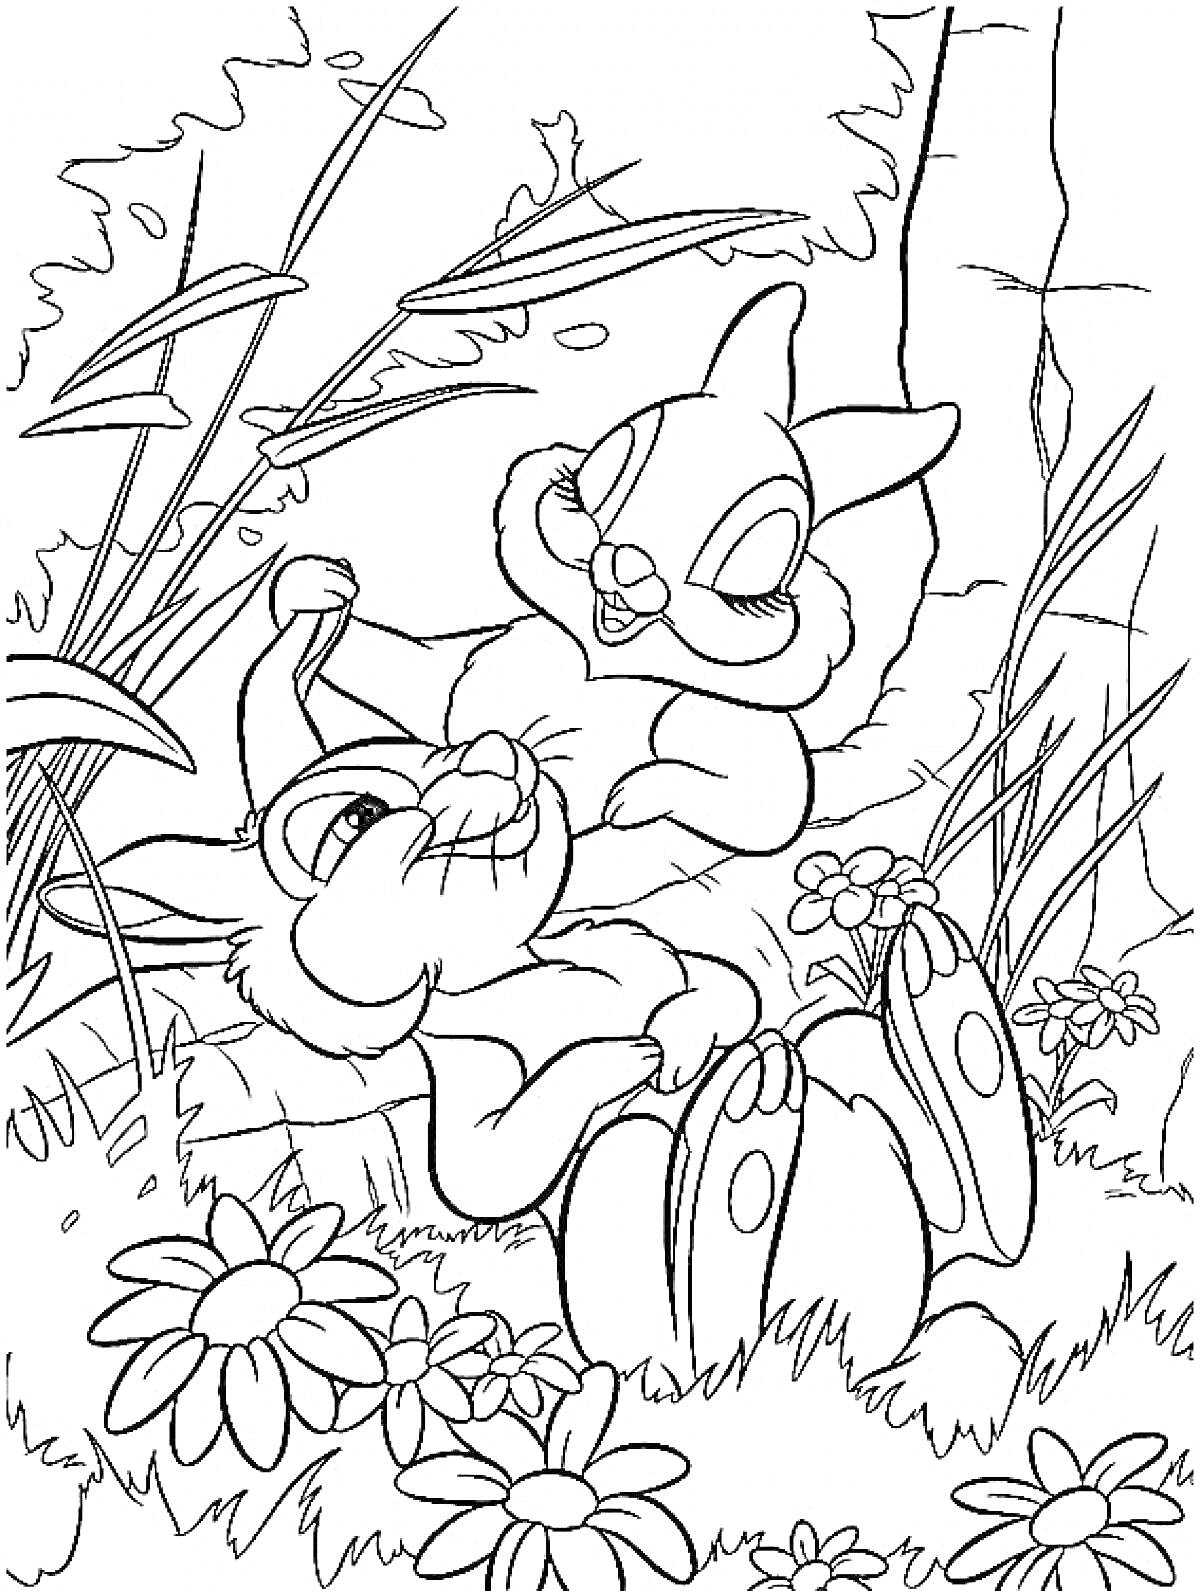 Два кролика играют на лугу с цветами, окружённые травой и растениями с каменной стеной на заднем плане